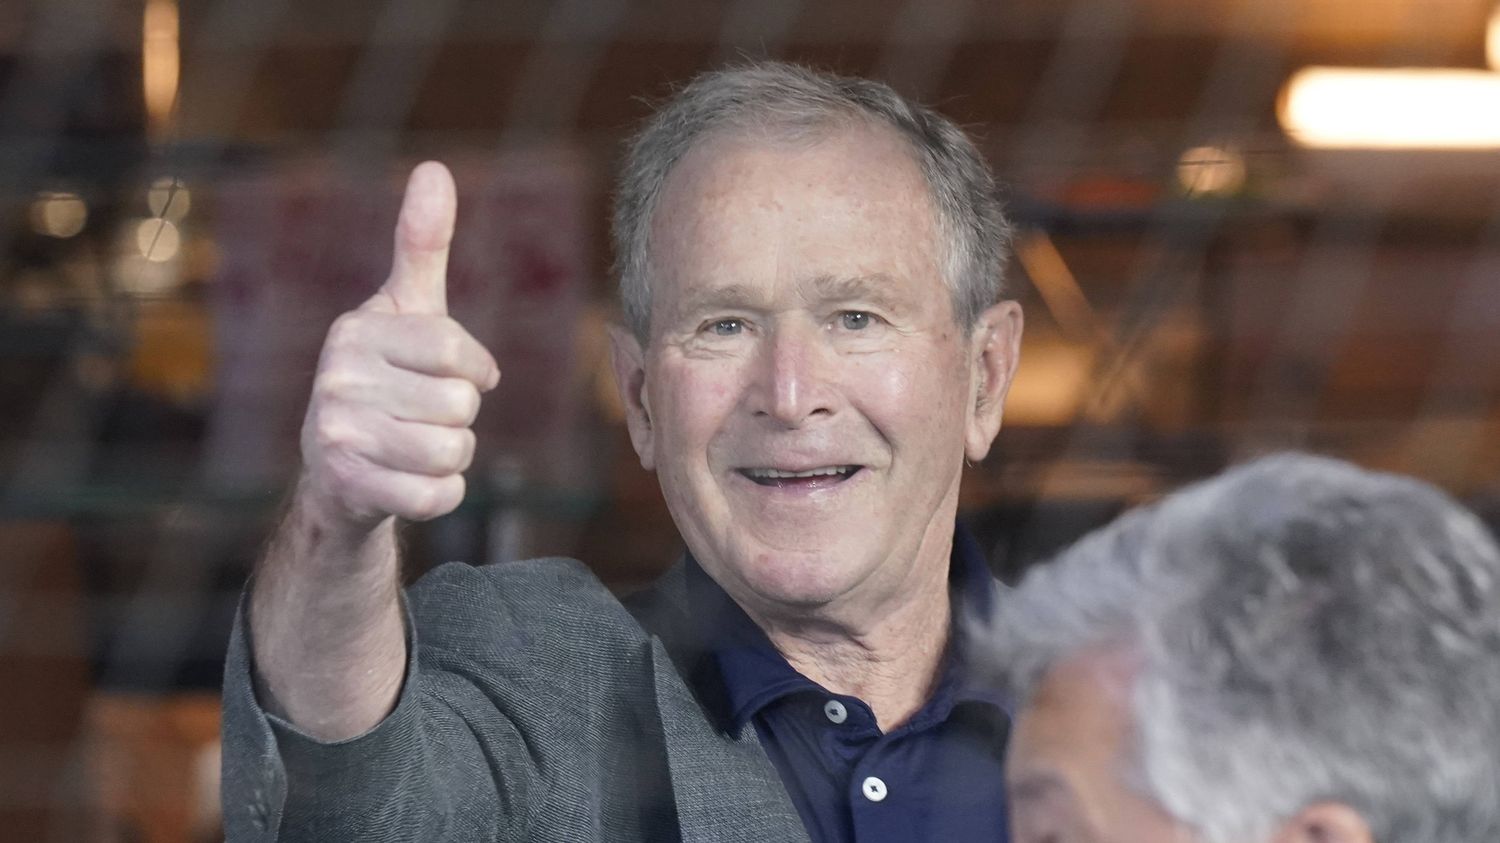 VIDEO. L'ex-président américain George W. Bush fait un lapsus et critique 